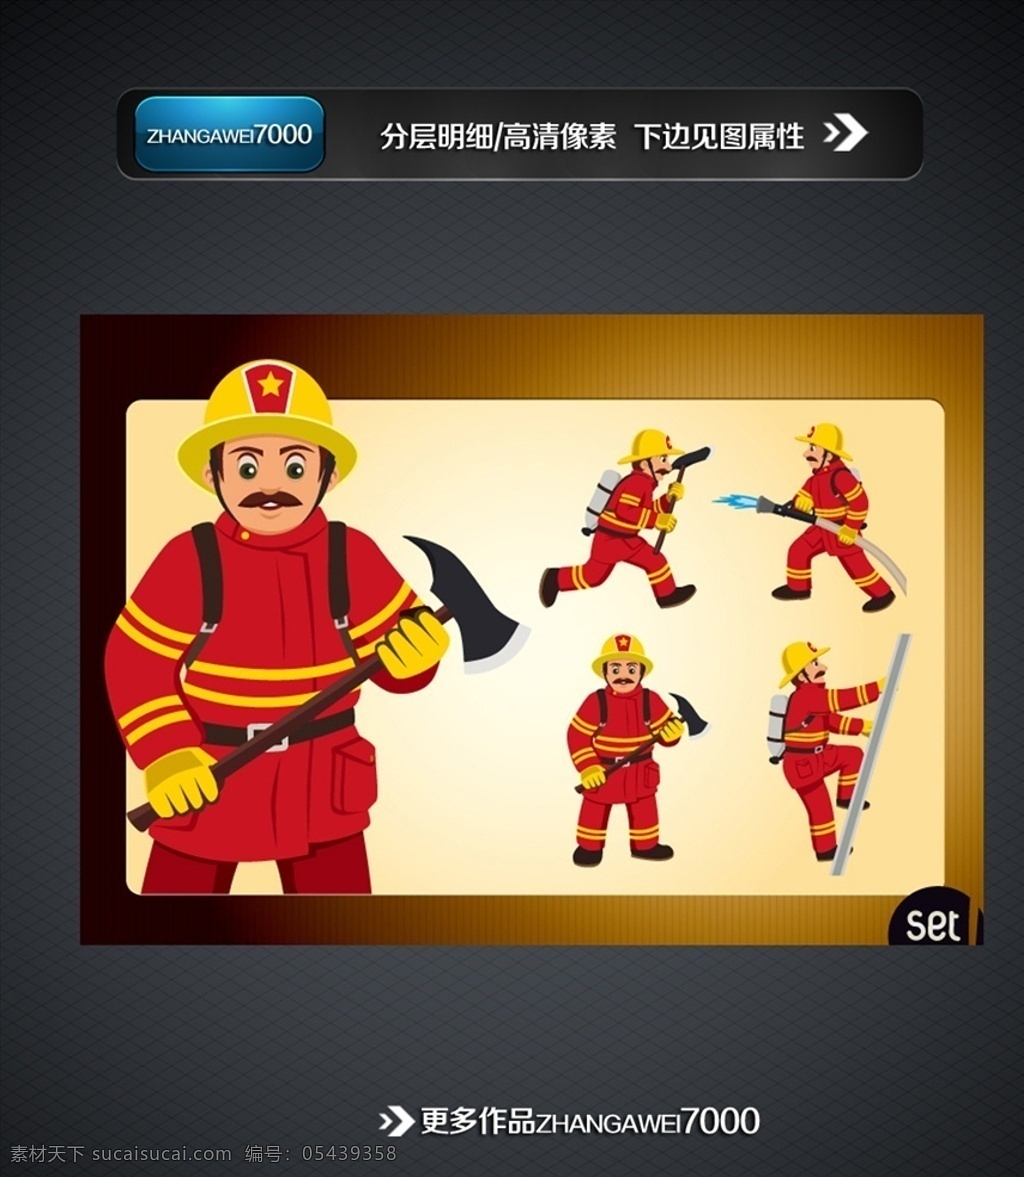 消防人物 消防素材 消防队 灭火 消防矢量图 矢量图人物 各类素材